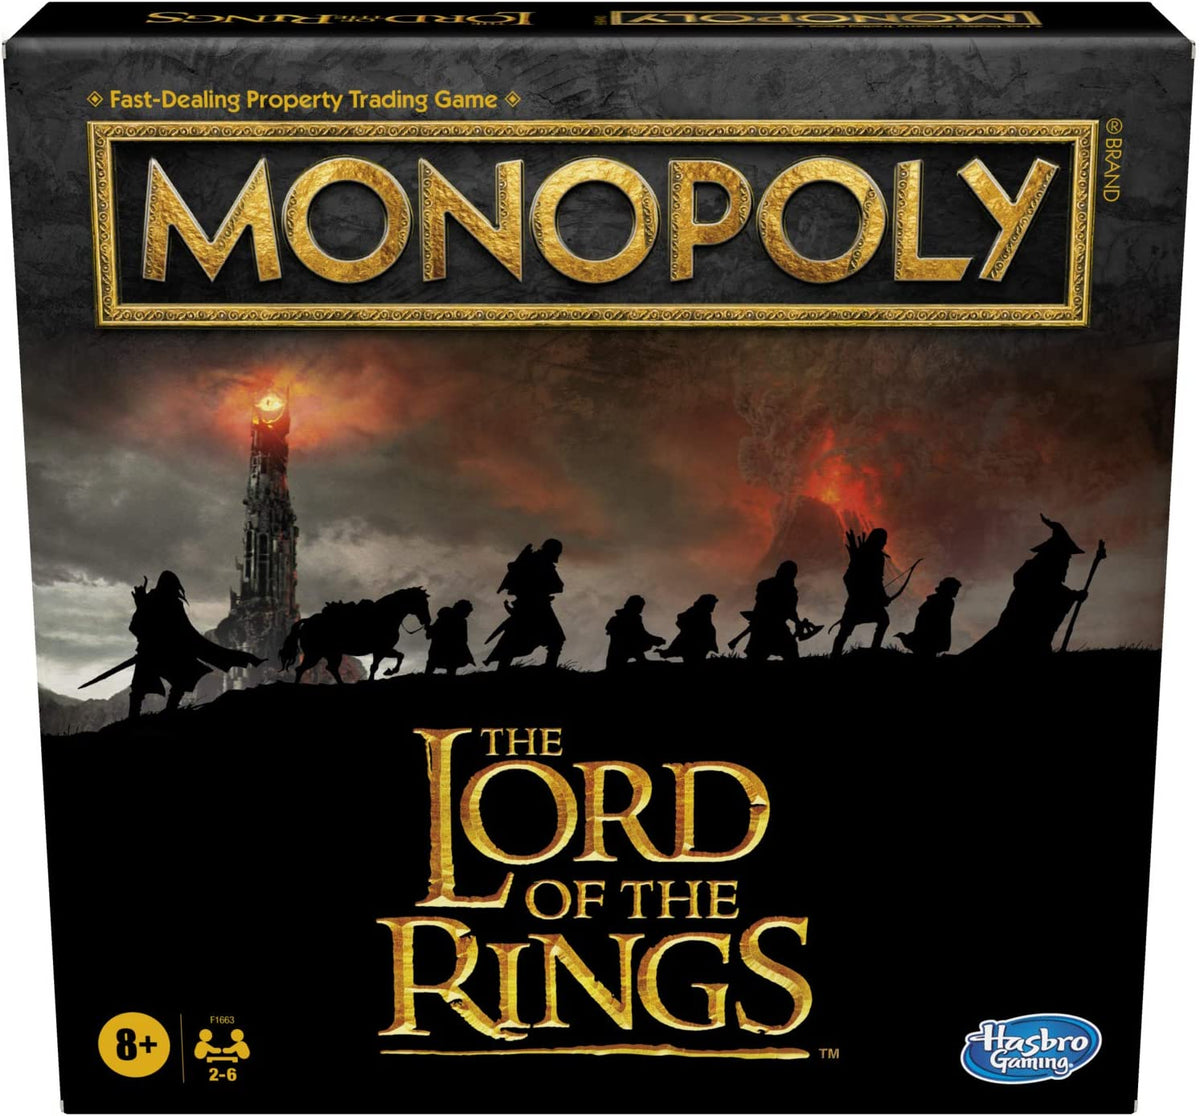 Juego de mesa de Monopoly El Señor de los Anillos Edition Hasbro Games